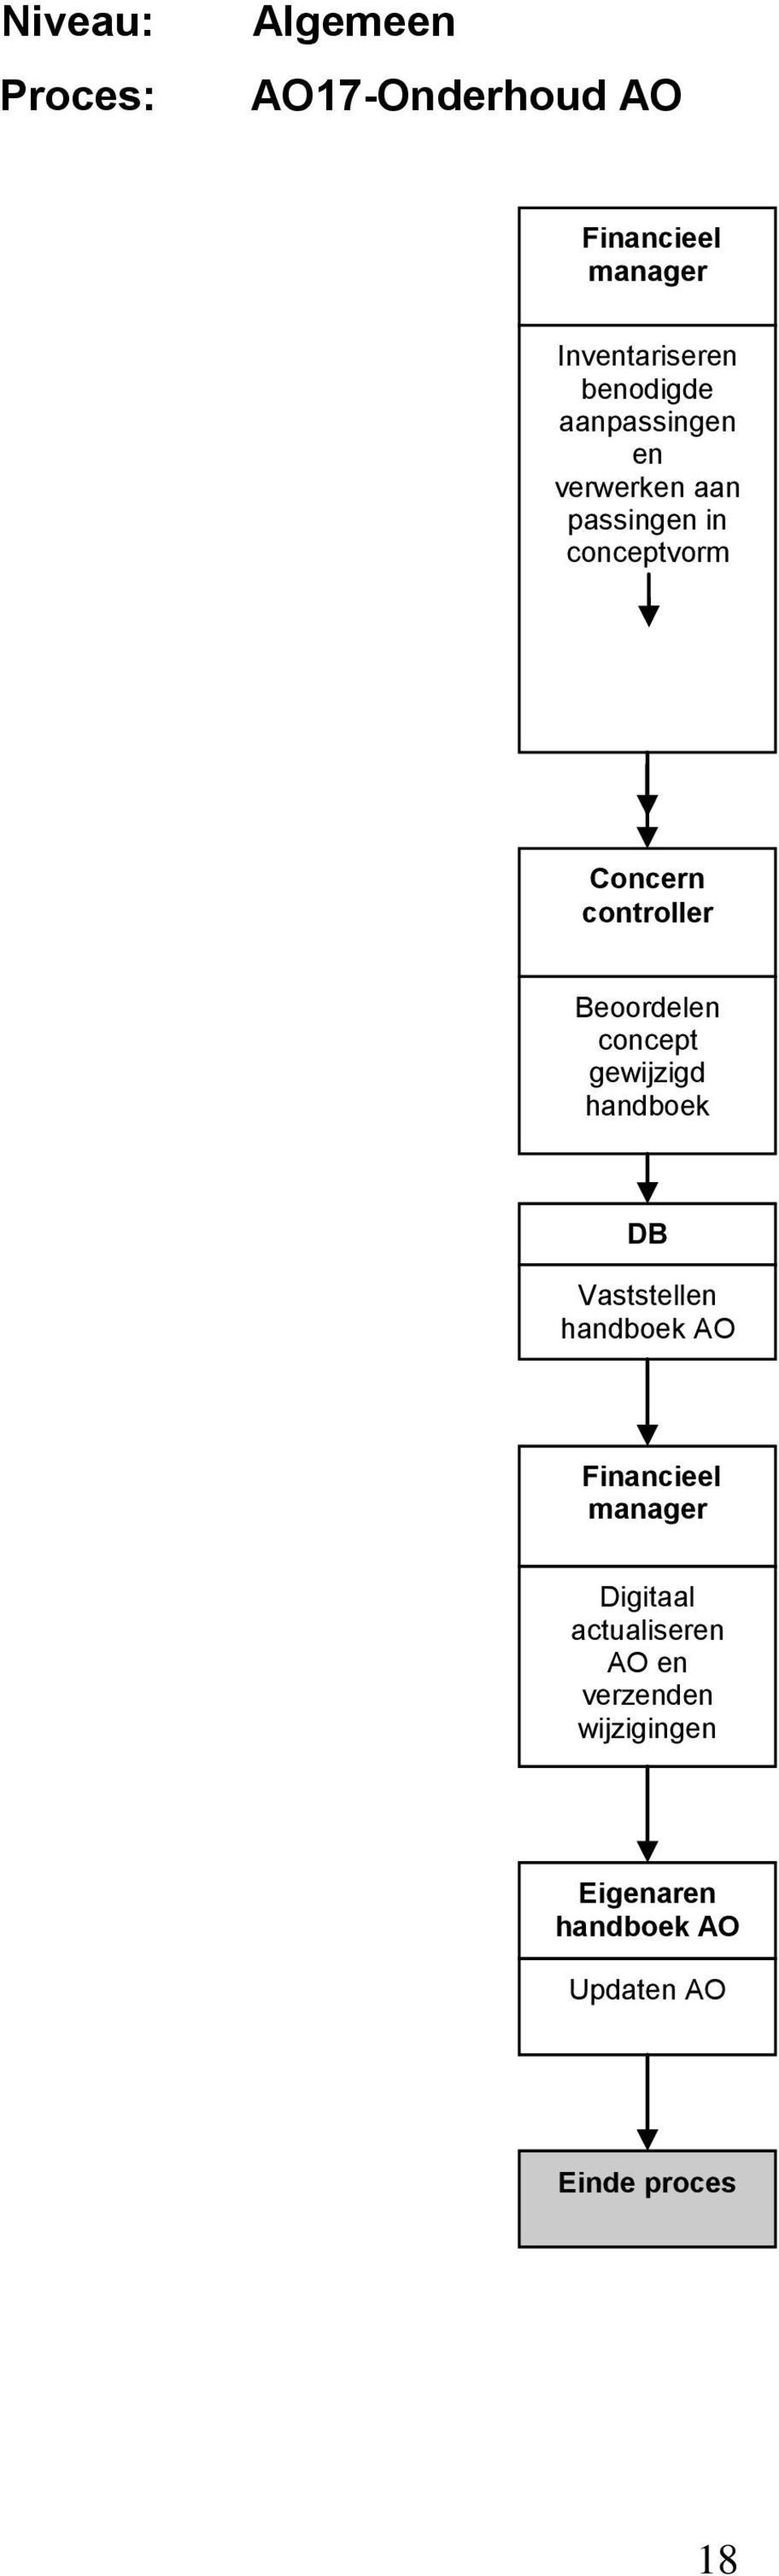 Beoordelen concept gewijzigd handboek DB Vaststellen handboek AO Financieel manager